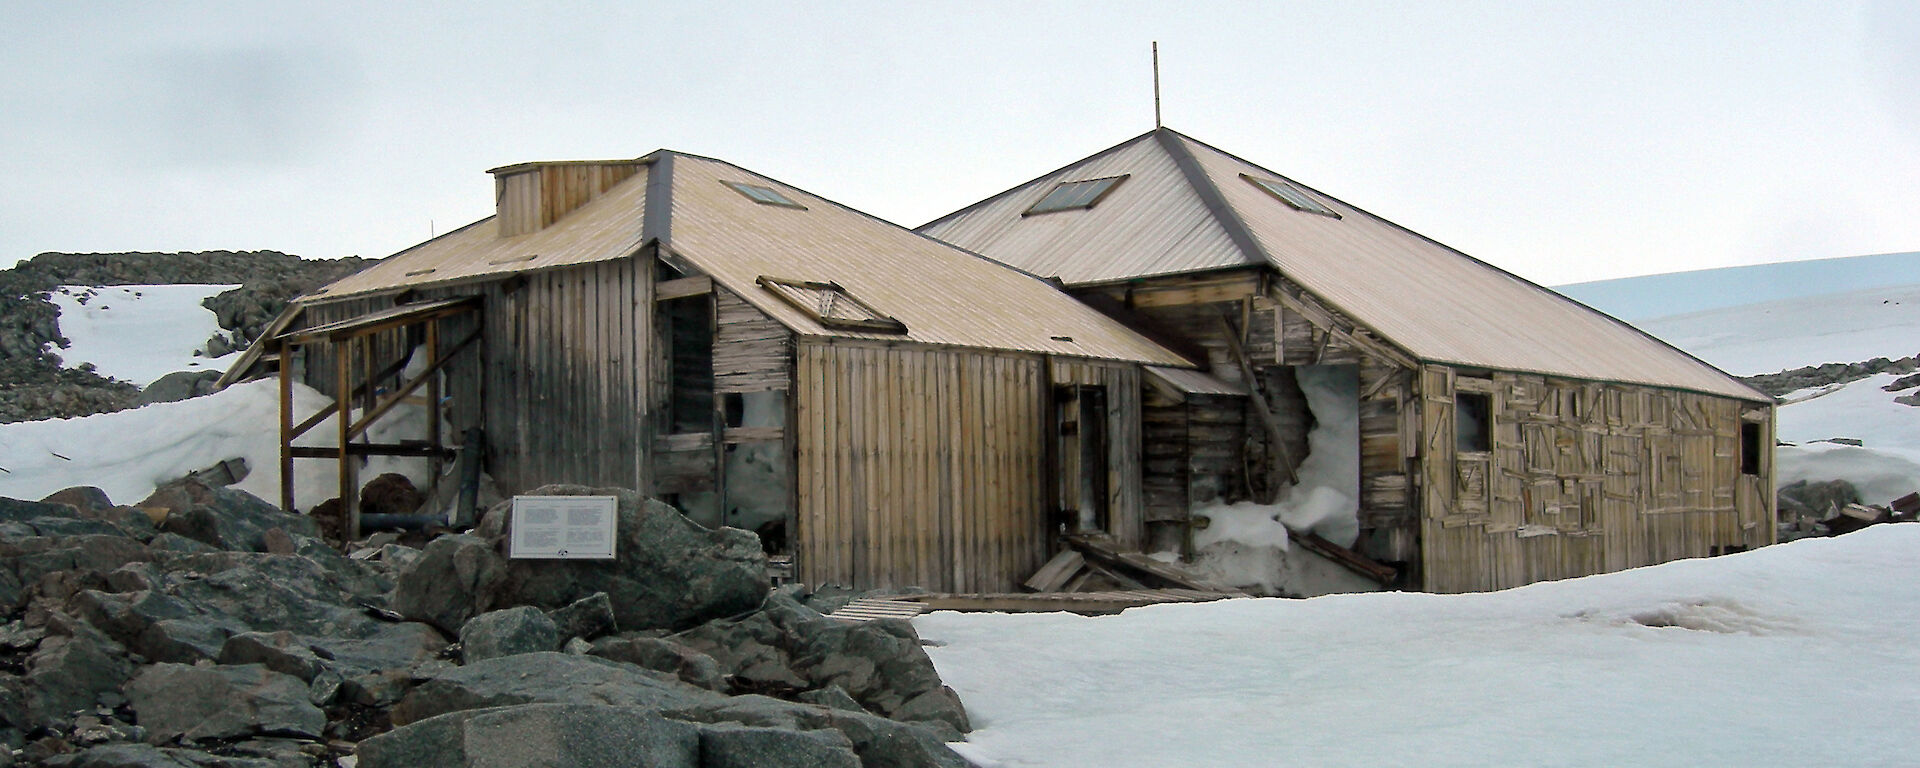 The Mawson’s Huts Historic Site at Cape Denison